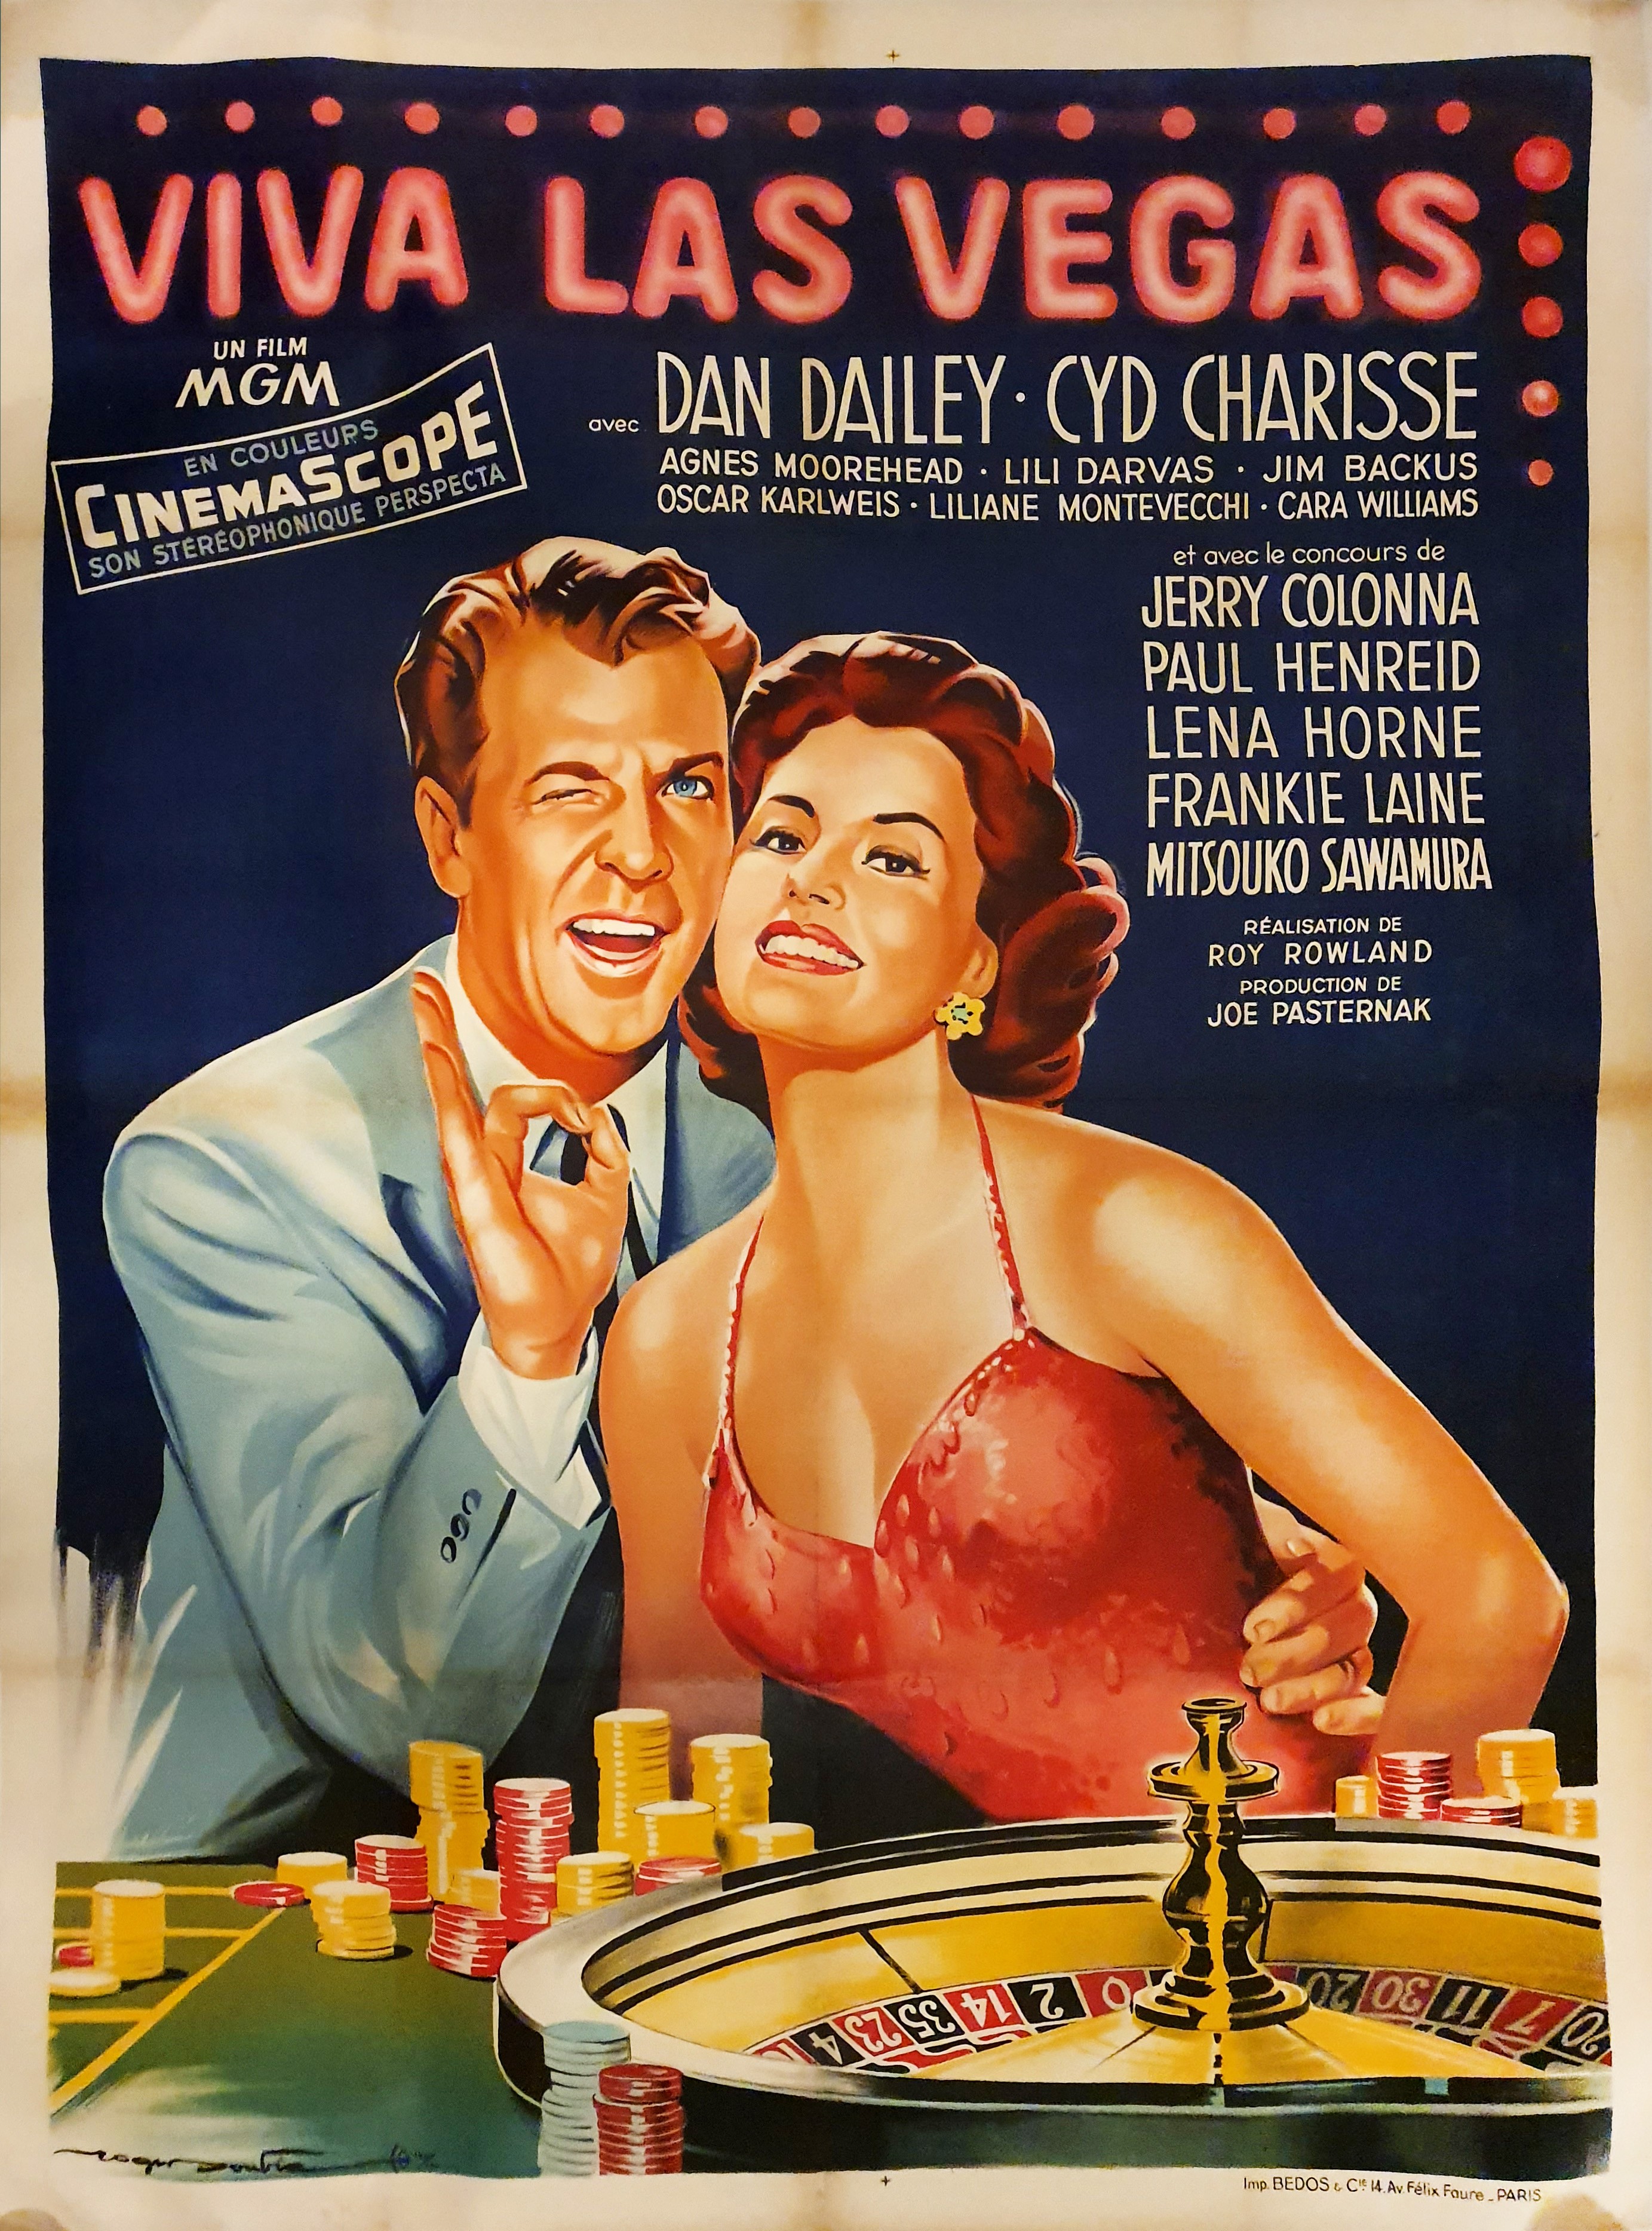 Viva Las Vegas 21 Burlesque Silk Screen Poster